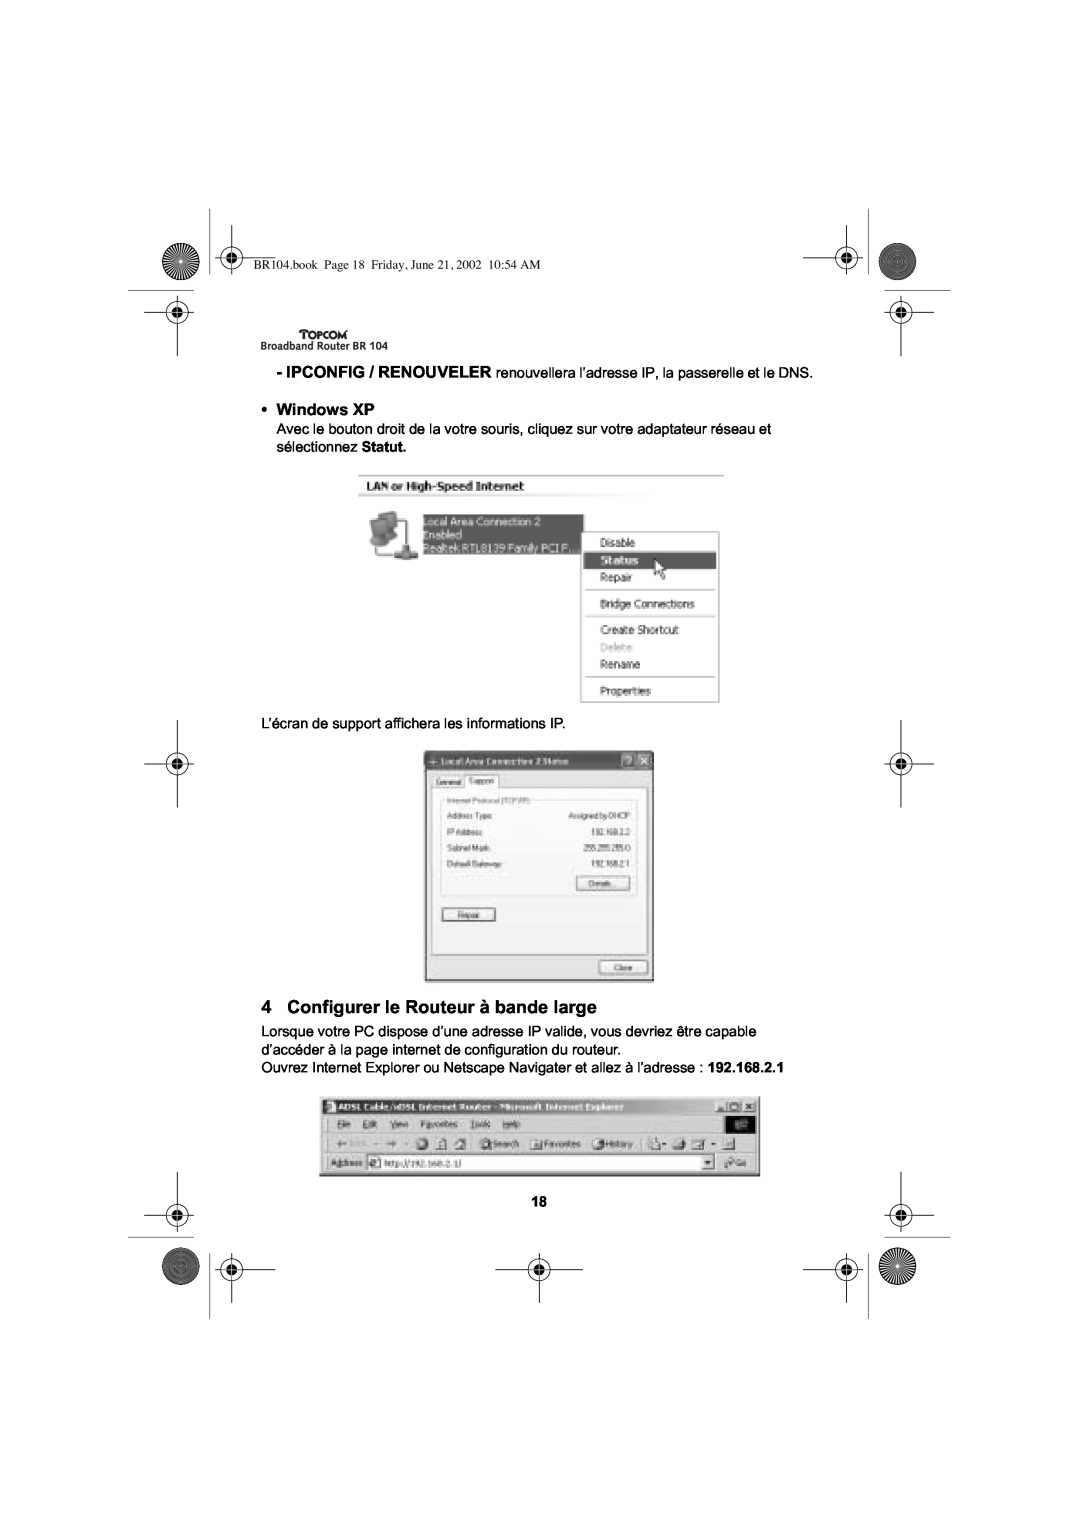 Topcom BR 104 manual Configurer le Routeur à bande large, Windows XP 